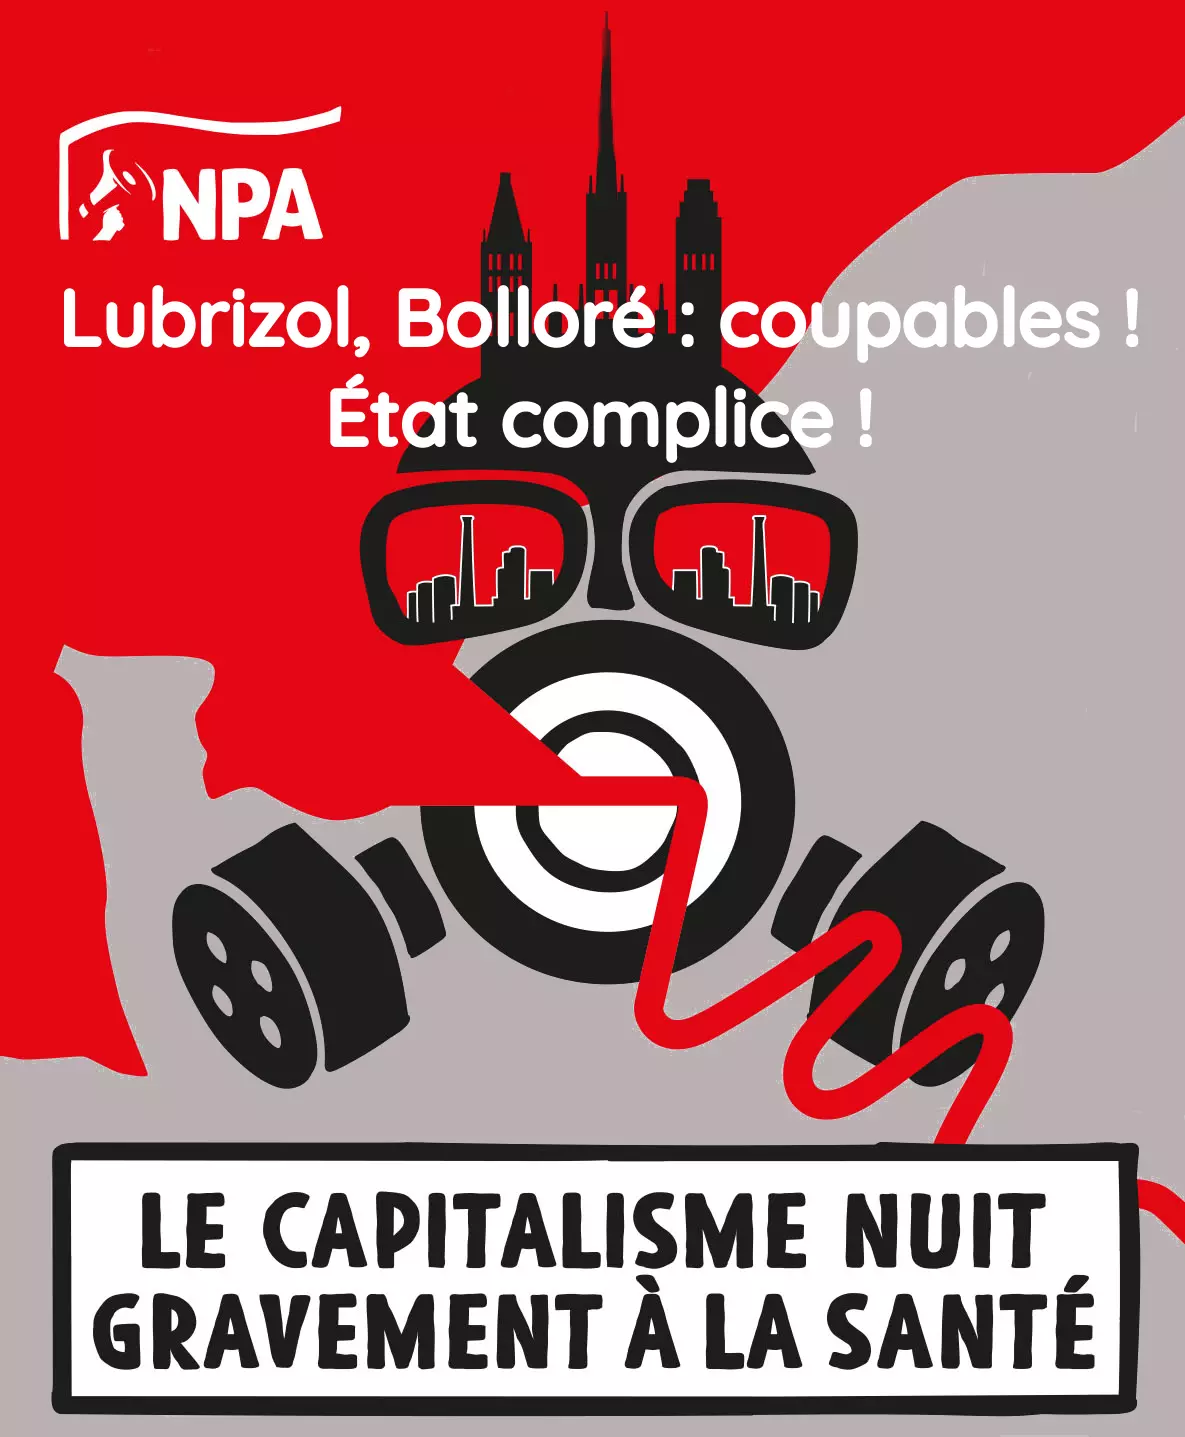 Lubrizol, Bolloré : coupables ! État complice ! Le capitalisme nuit gravement à la santé.